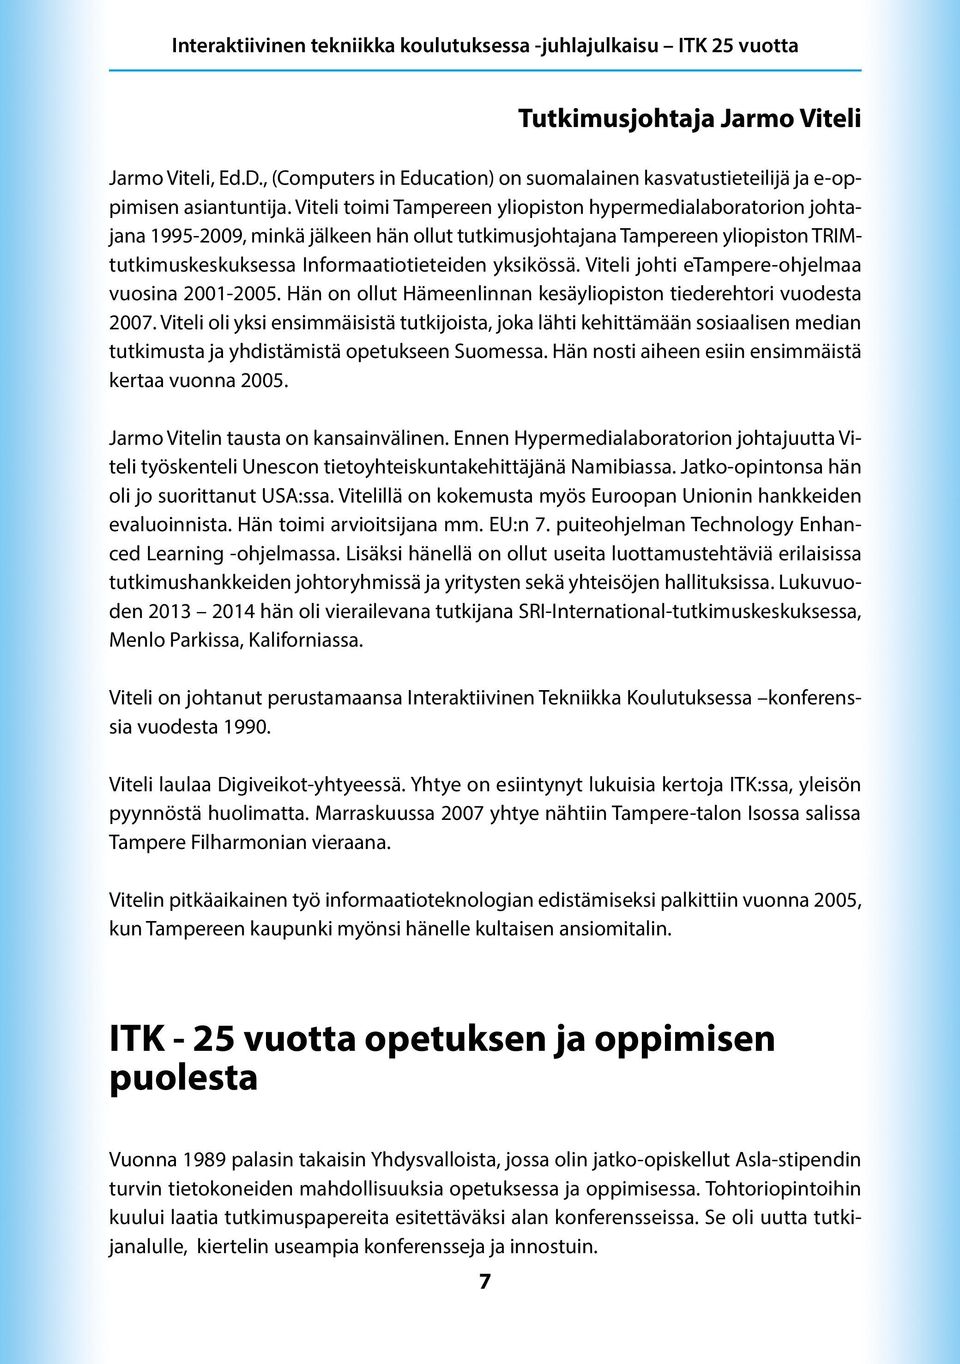 Viteli johti etampere-ohjelmaa vuosina 2001-2005. Hän on ollut Hämeenlinnan kesäyliopiston tiederehtori vuodesta 2007.